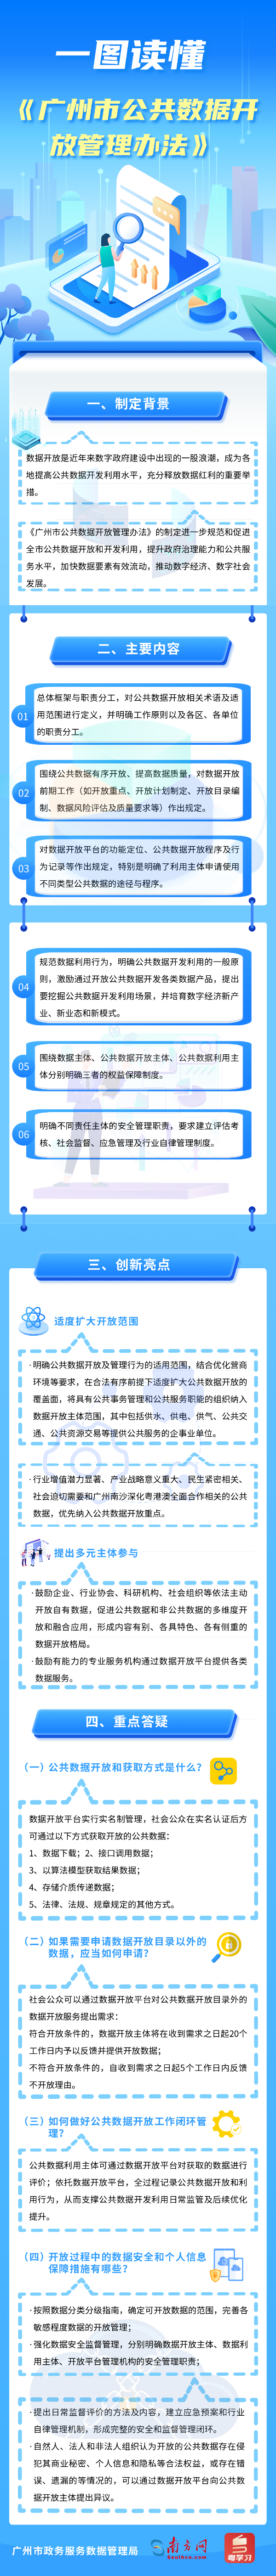 【一图读懂】广州市公共数据开放管理办法4445.jpg